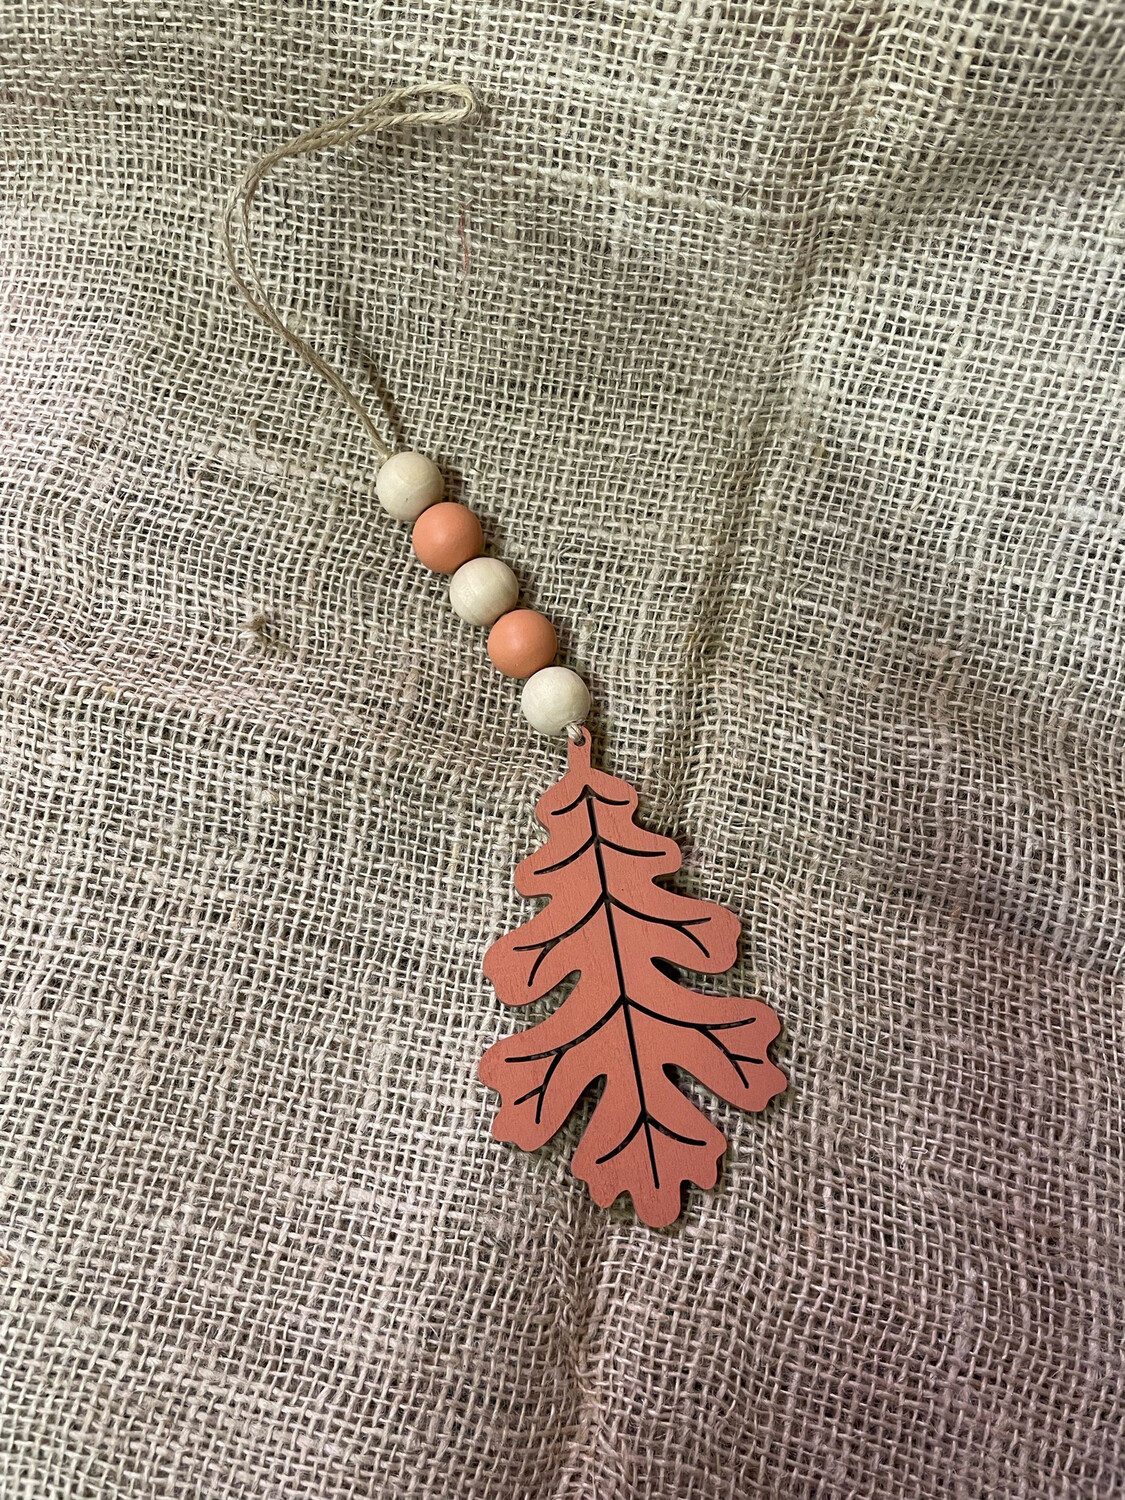 Beaded leaf 14 “ Including Jute Hanger